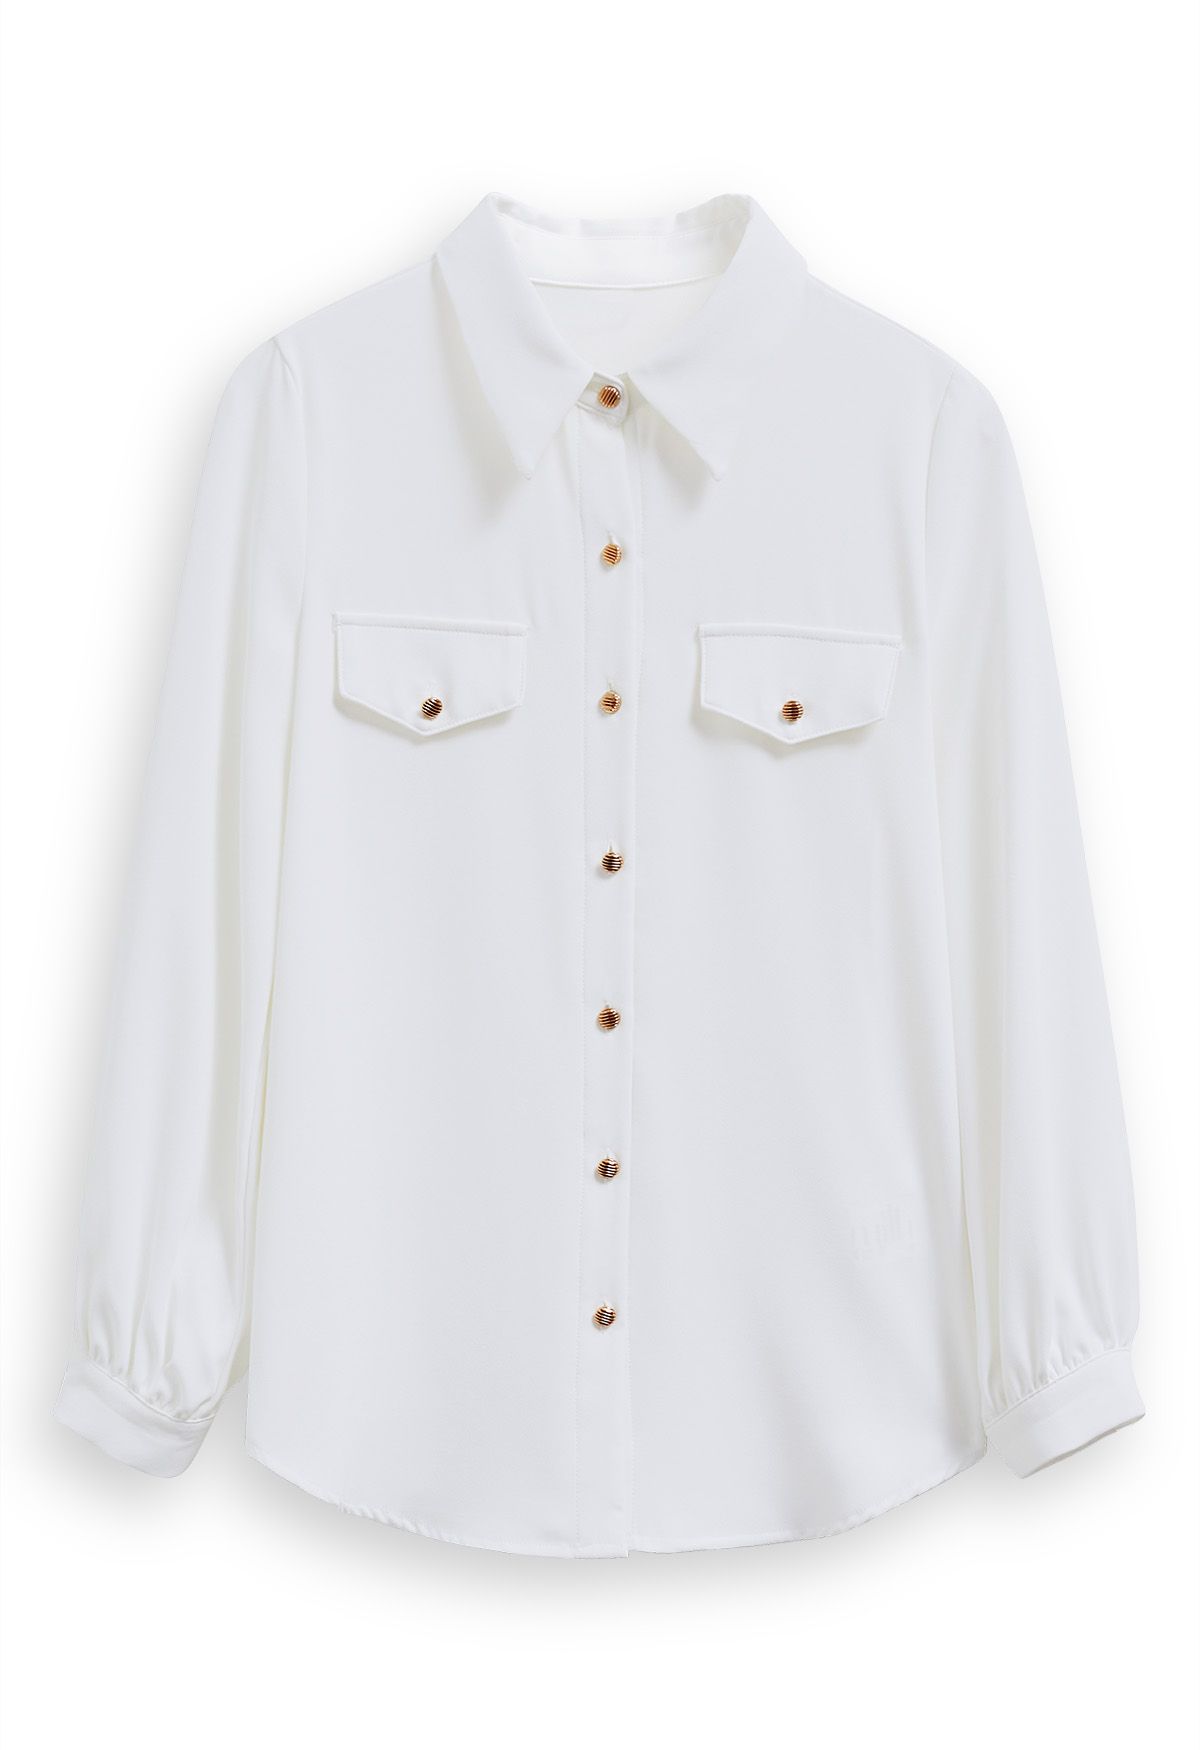 Modernes Chiffonhemd mit Knopfakzent in Weiß